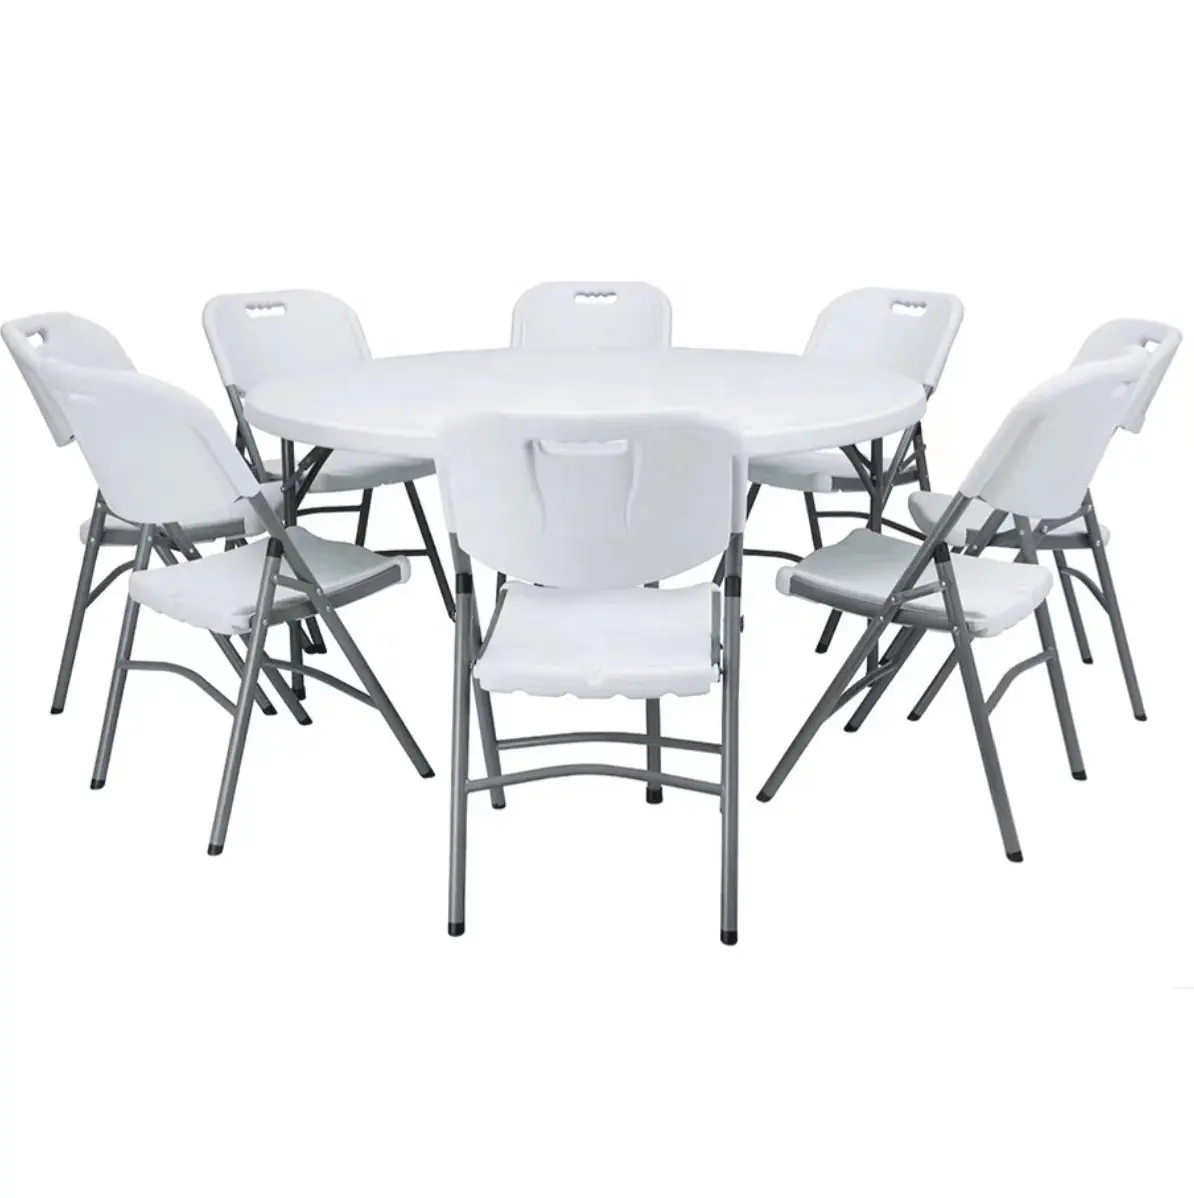 Mesa redonda de plástico plegable de 5 pies y 6 pies, mesa de comedor redonda de plástico duradero y fuerte, mesas y sillas de plástico baratas, color blanco